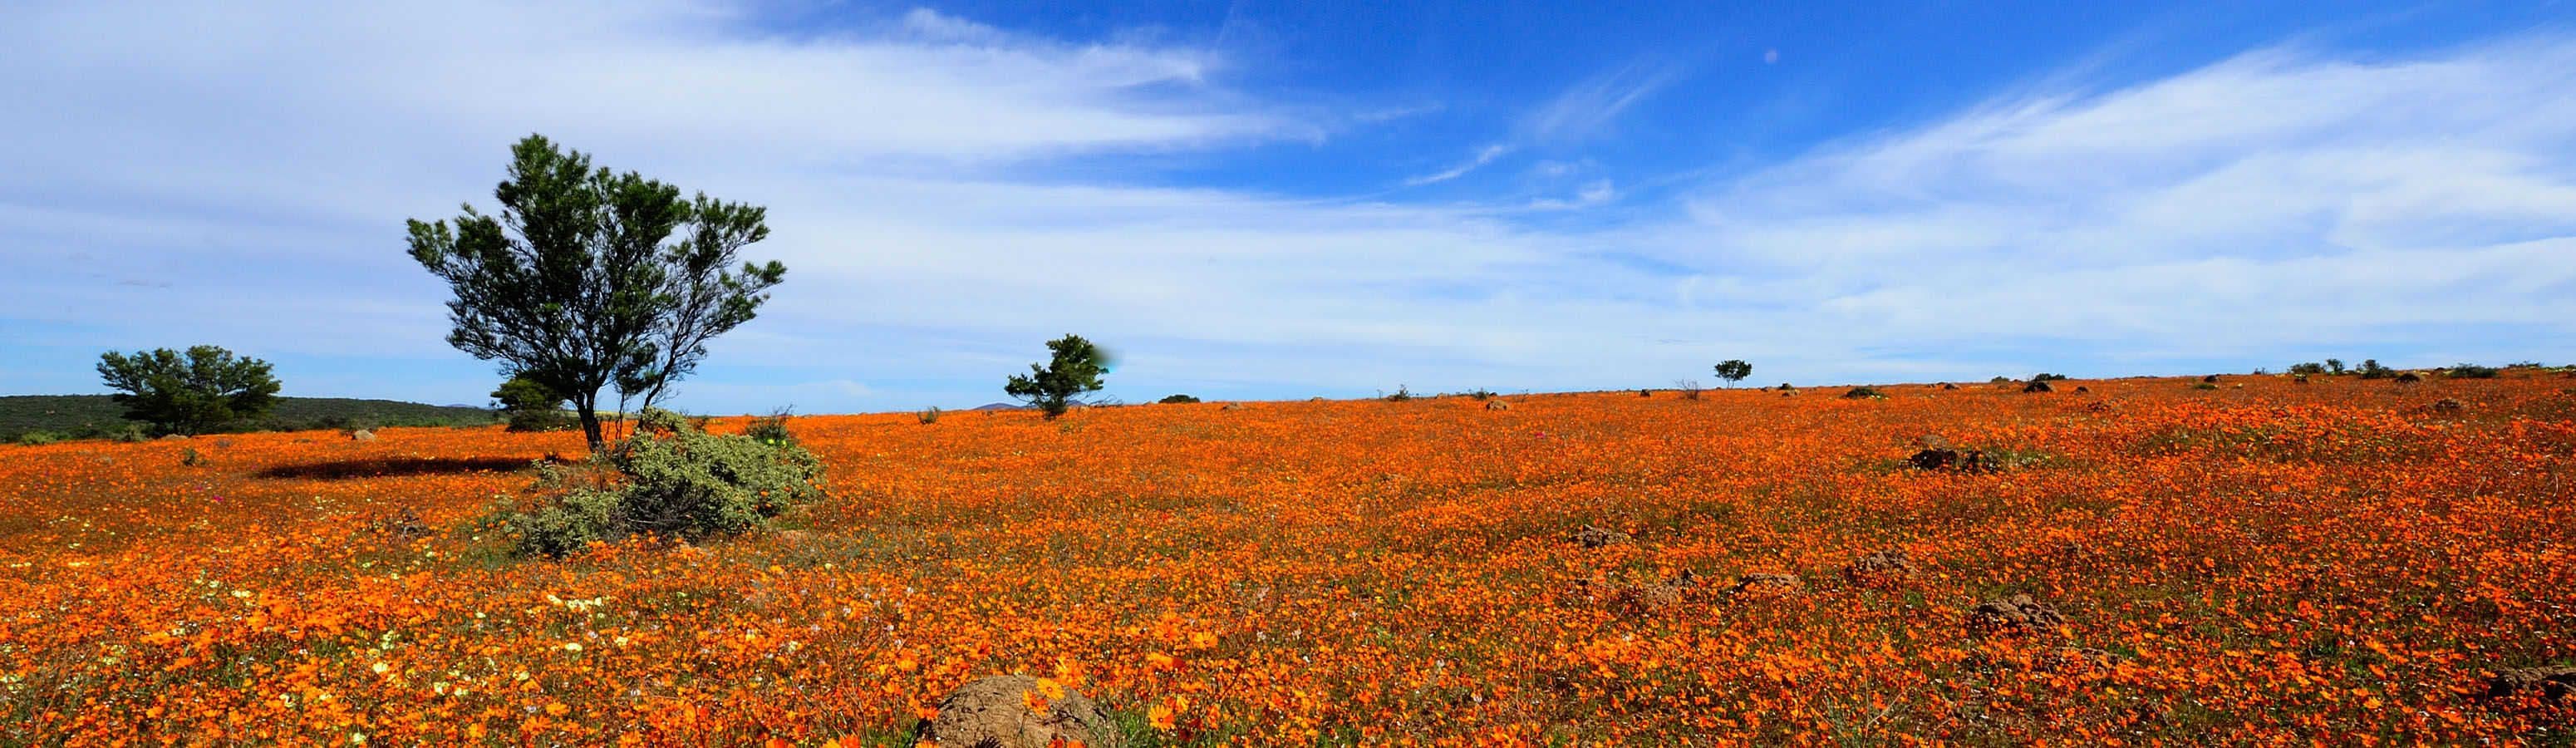 Намакваленд - красивая цветущая пустыня